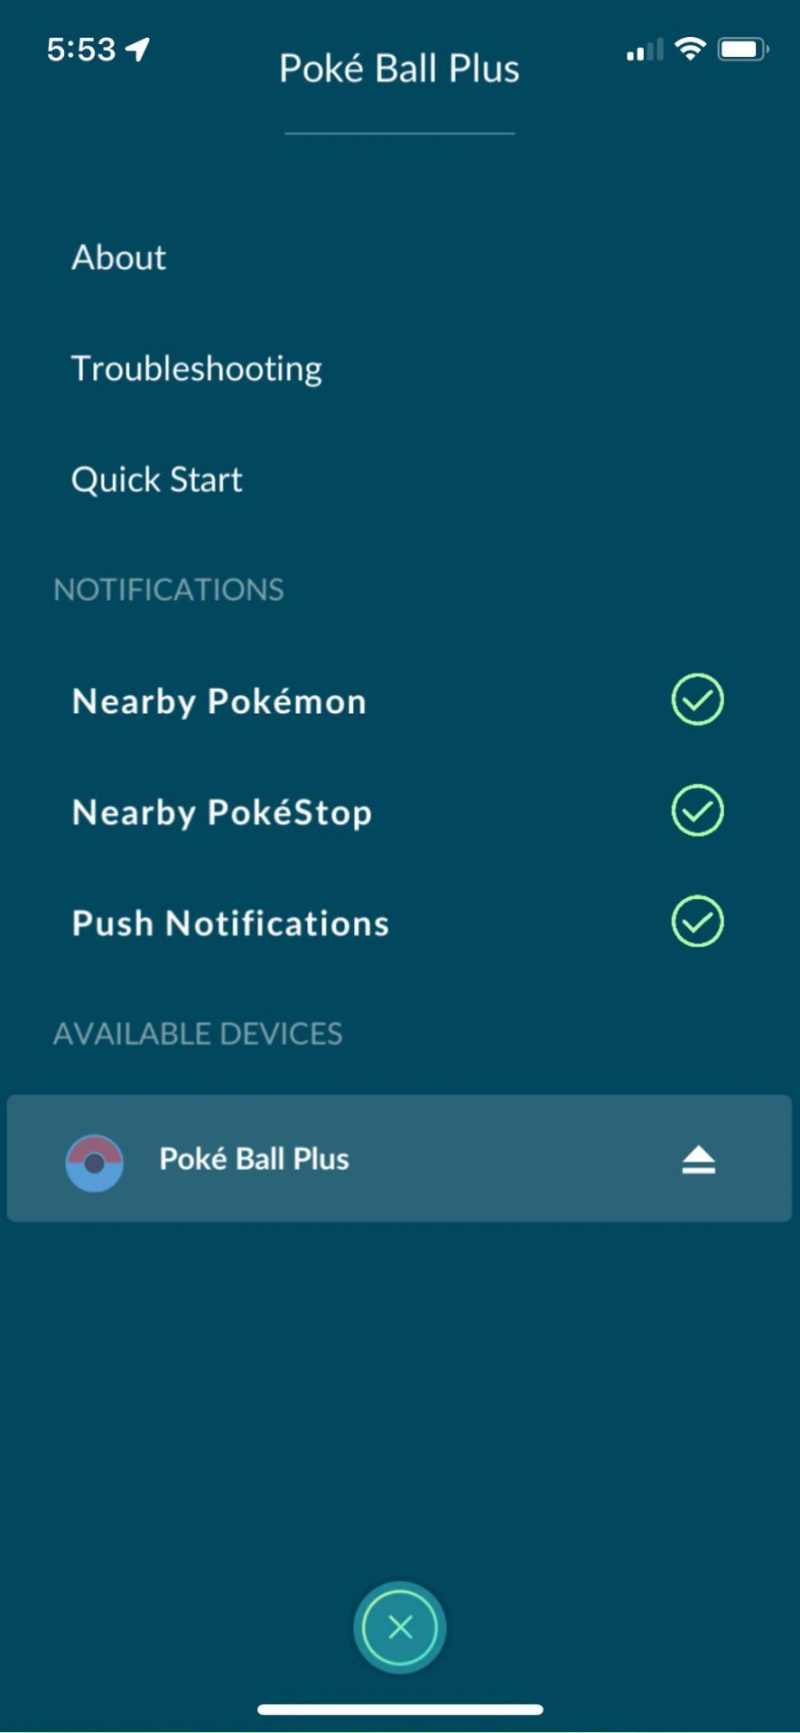   قم بتوصيل Poke Ball Plus بـ Pokémon اذهب وانظر القائمة لإدارة الإخطارات